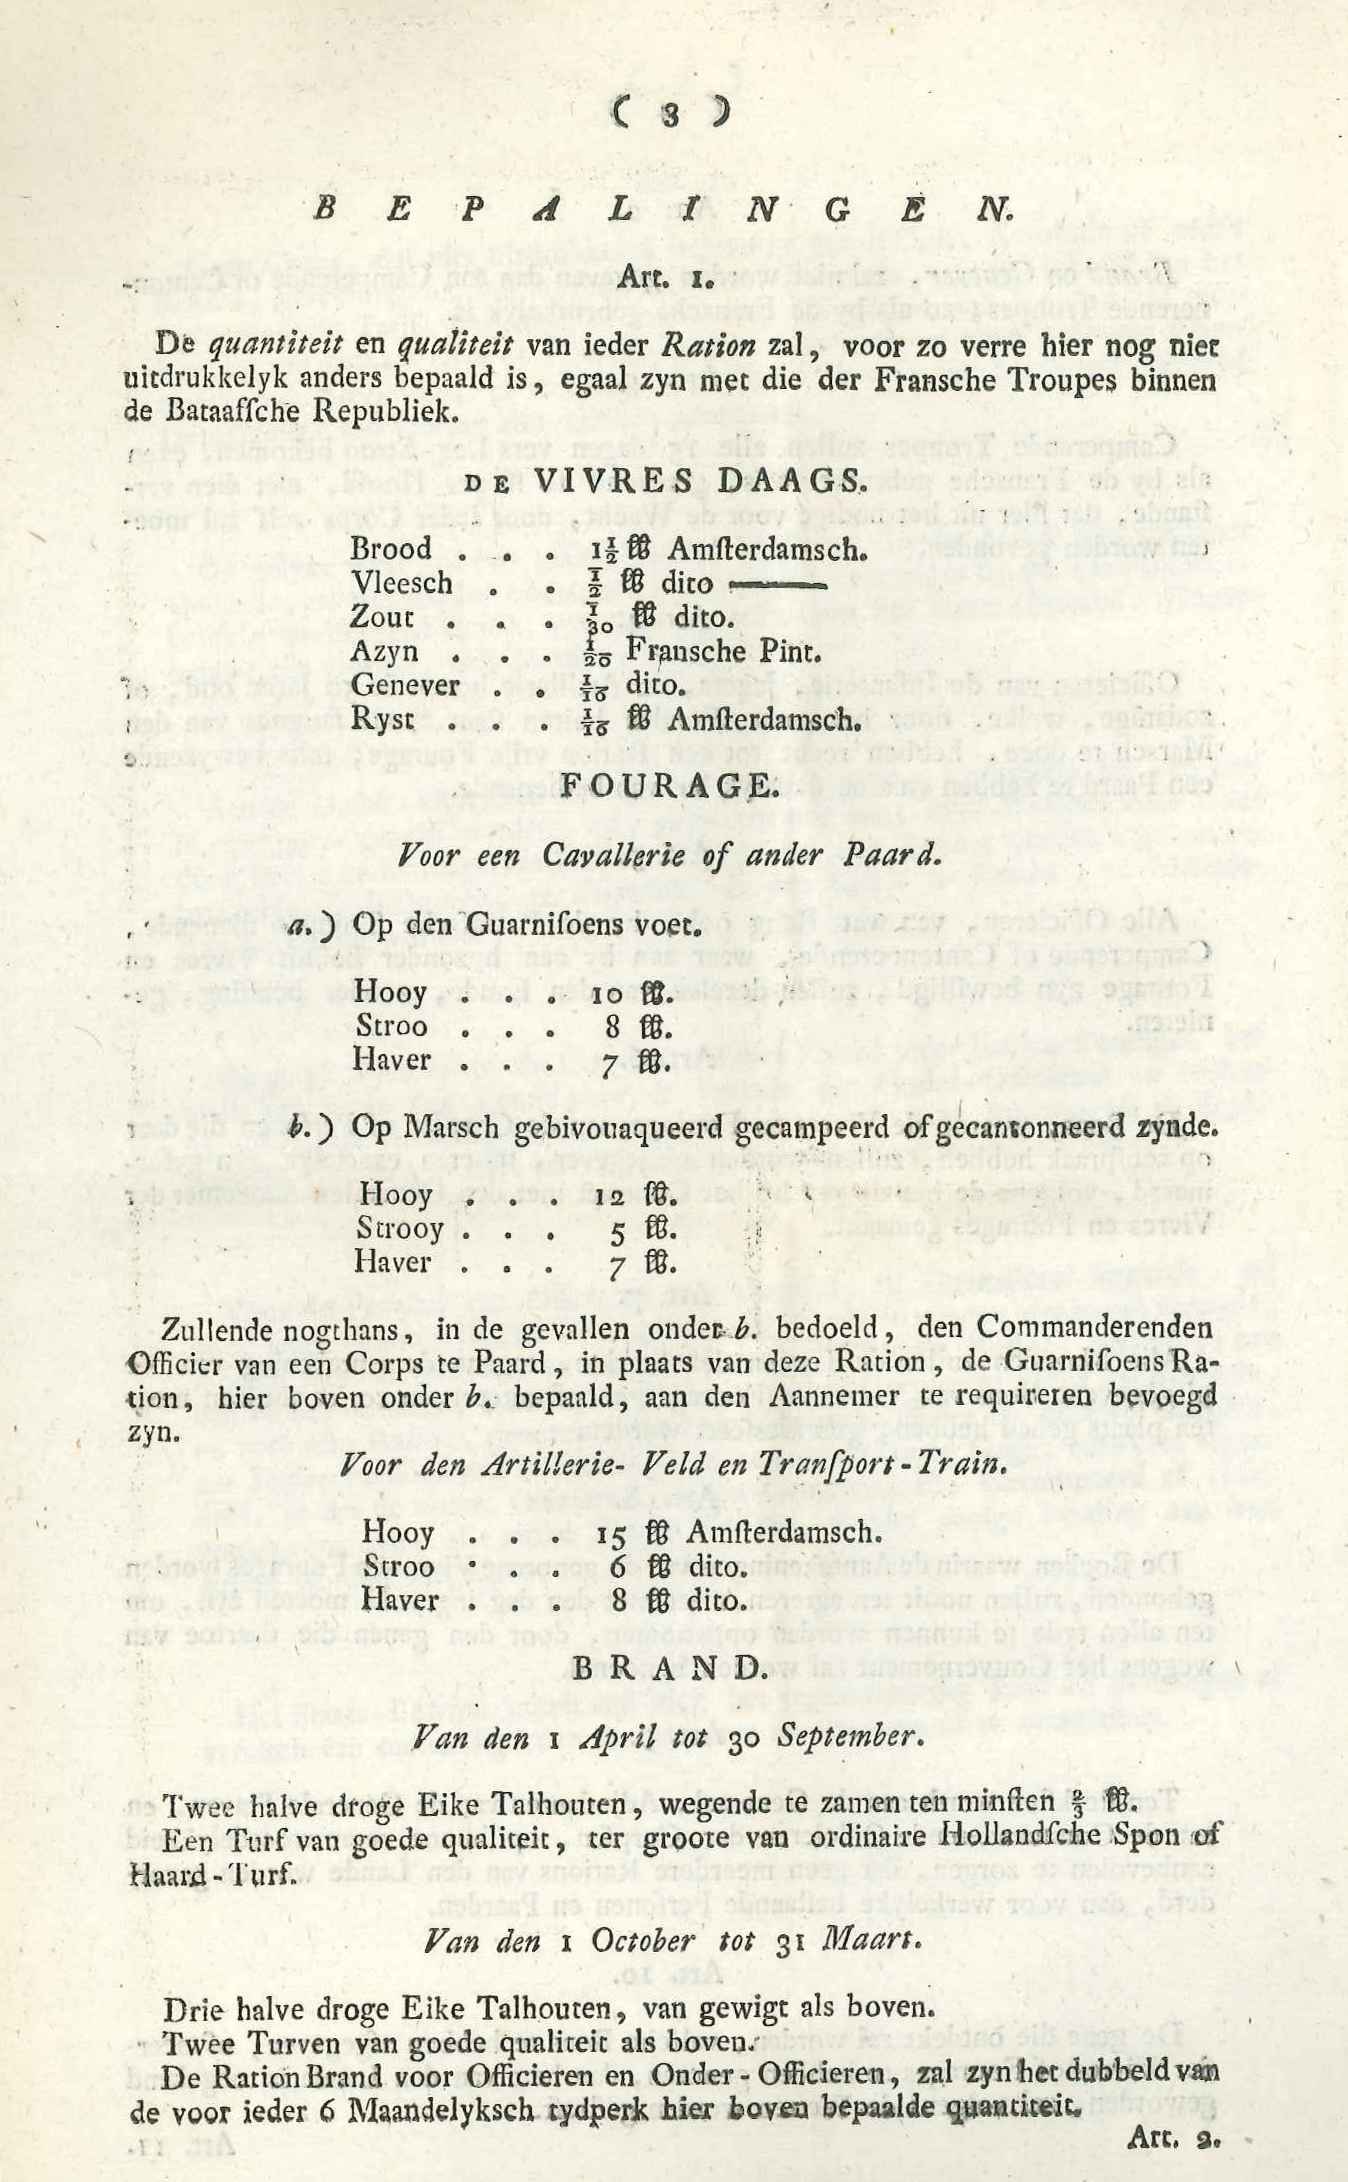 Lijst van rantsoenen voor het Bataafse leger, 1806.